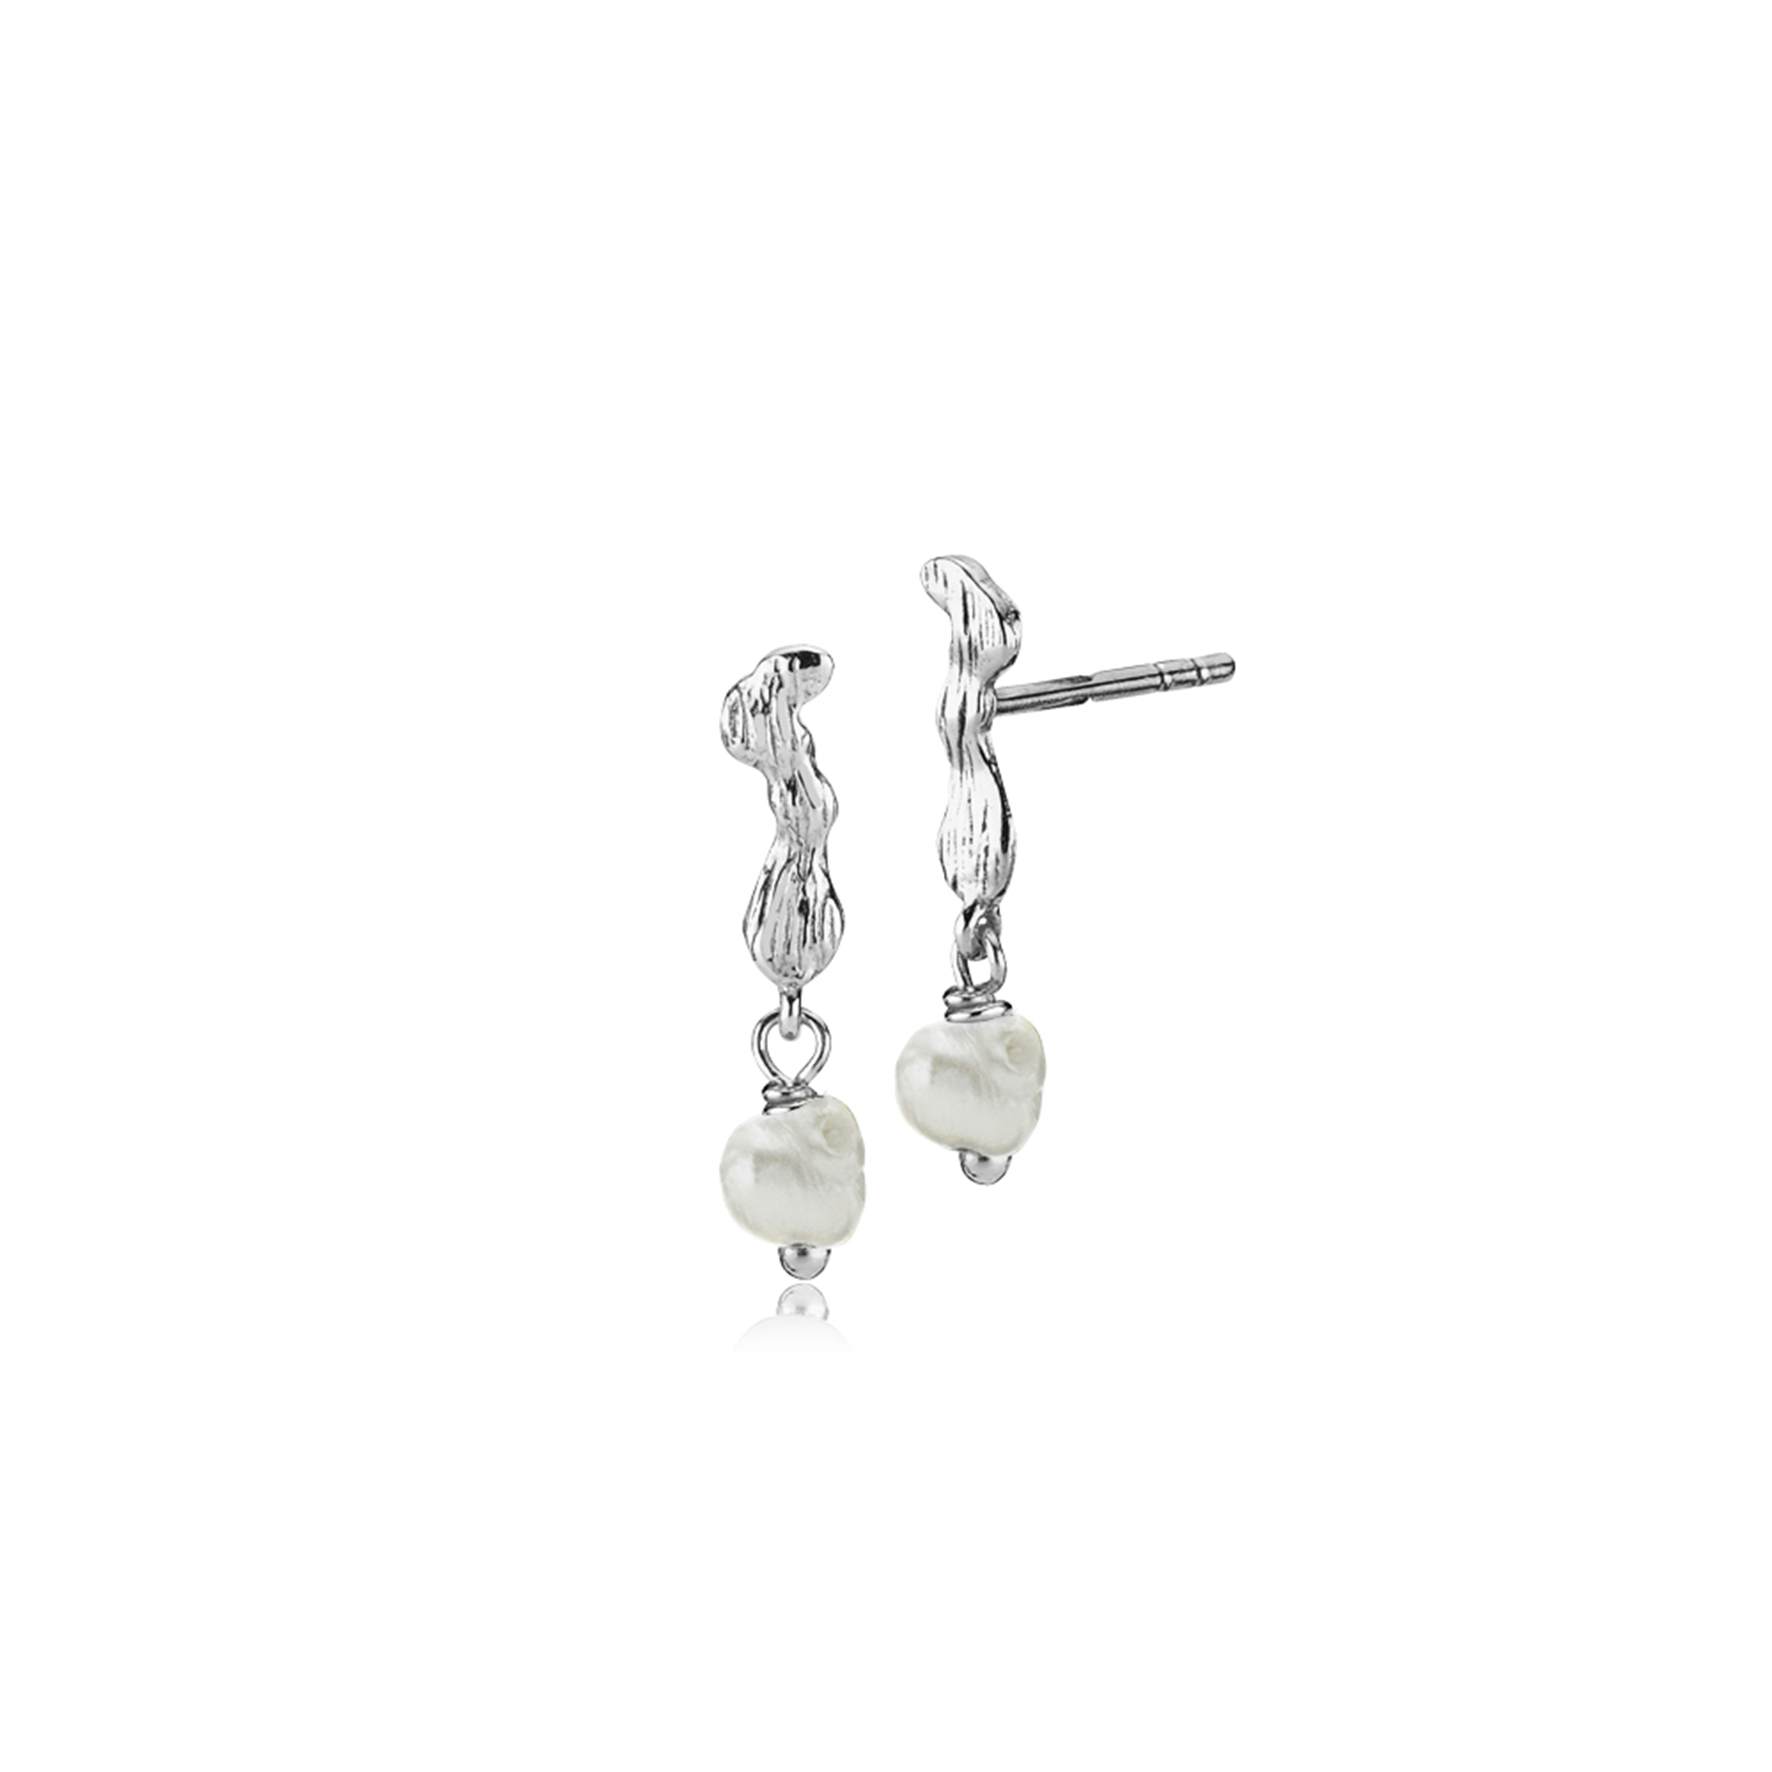 Lærke Bentsen By Sistie Earsticks With Pearls von Sistie in Silber Sterling 925|Freshwater Pearl